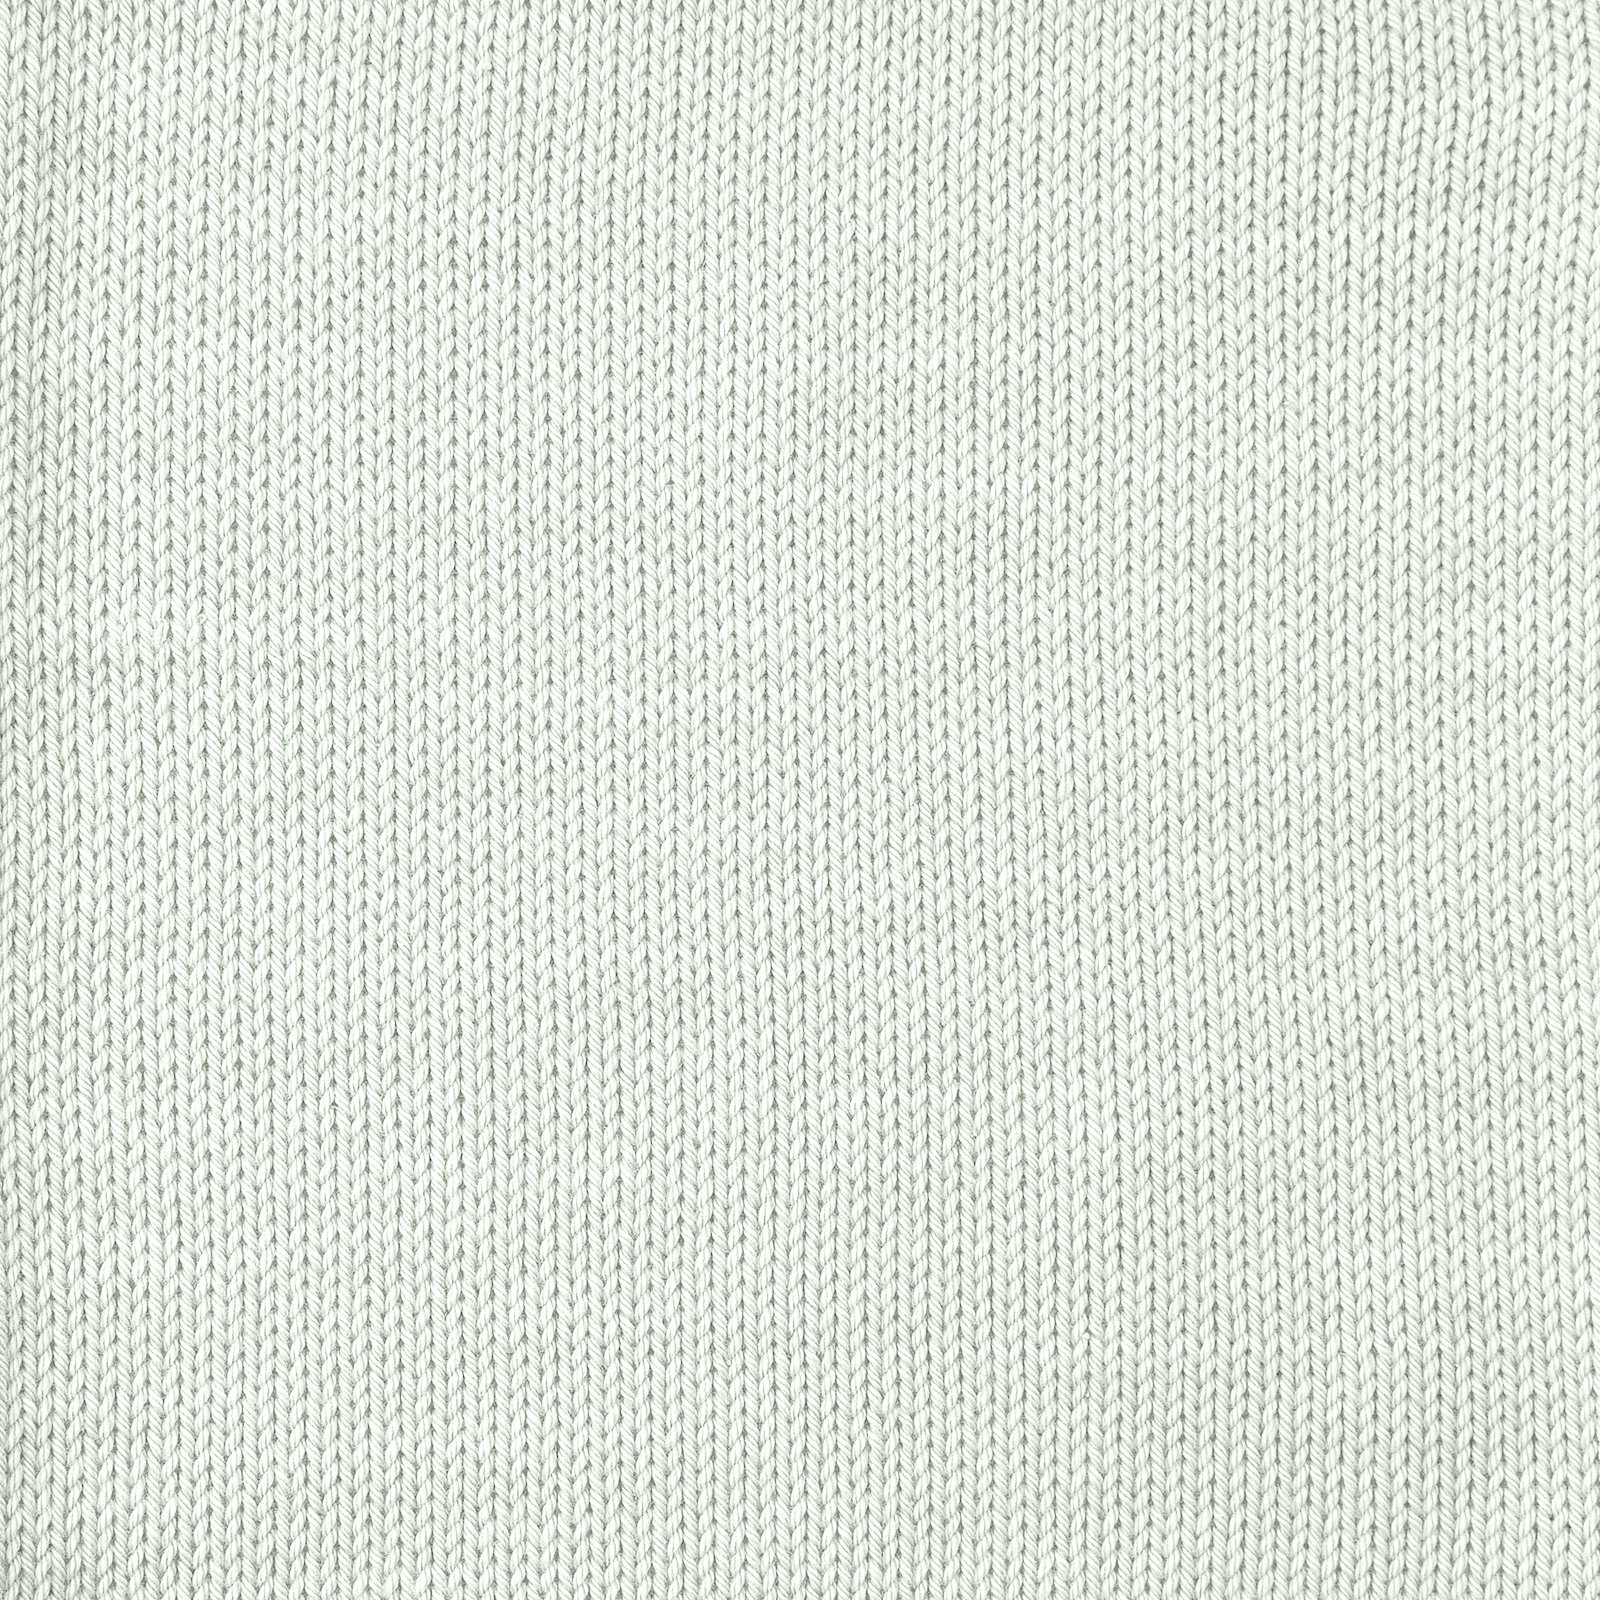 FRAYA, 100% cotton 8/4  yarn  "Colourful", pale green 90060086_sskit